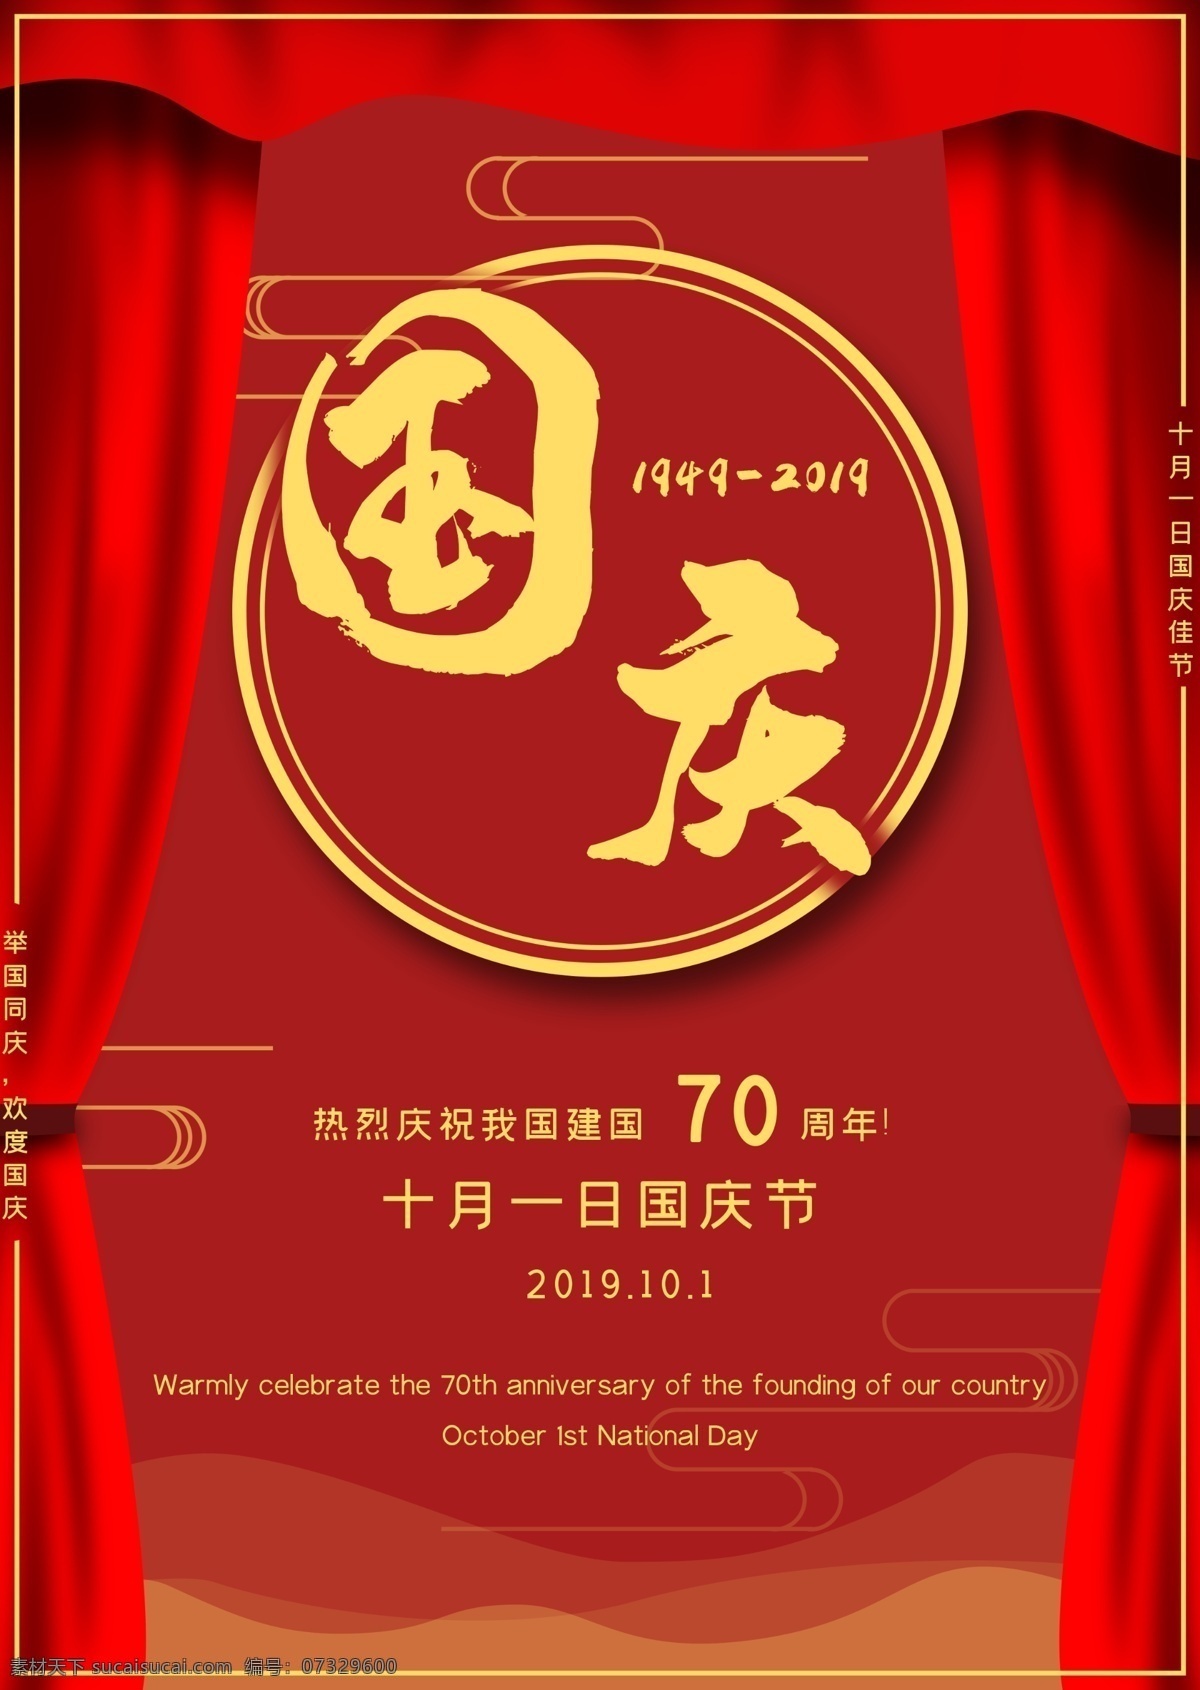 建国 周年 国庆 海报 70周年 红色 大气 节日 党建海报